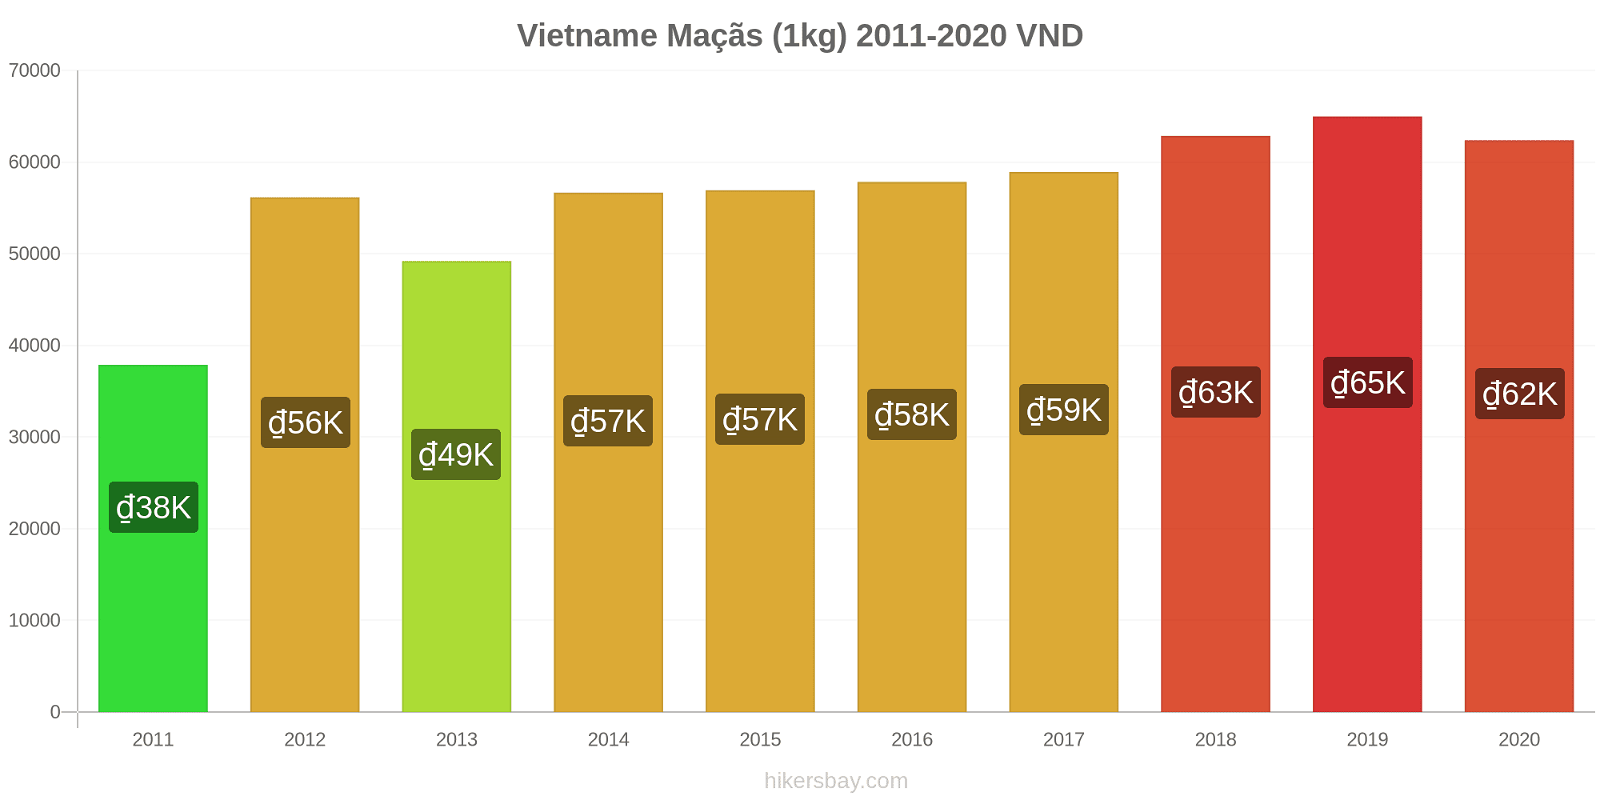 Vietname variação de preço Maçãs (1kg) hikersbay.com